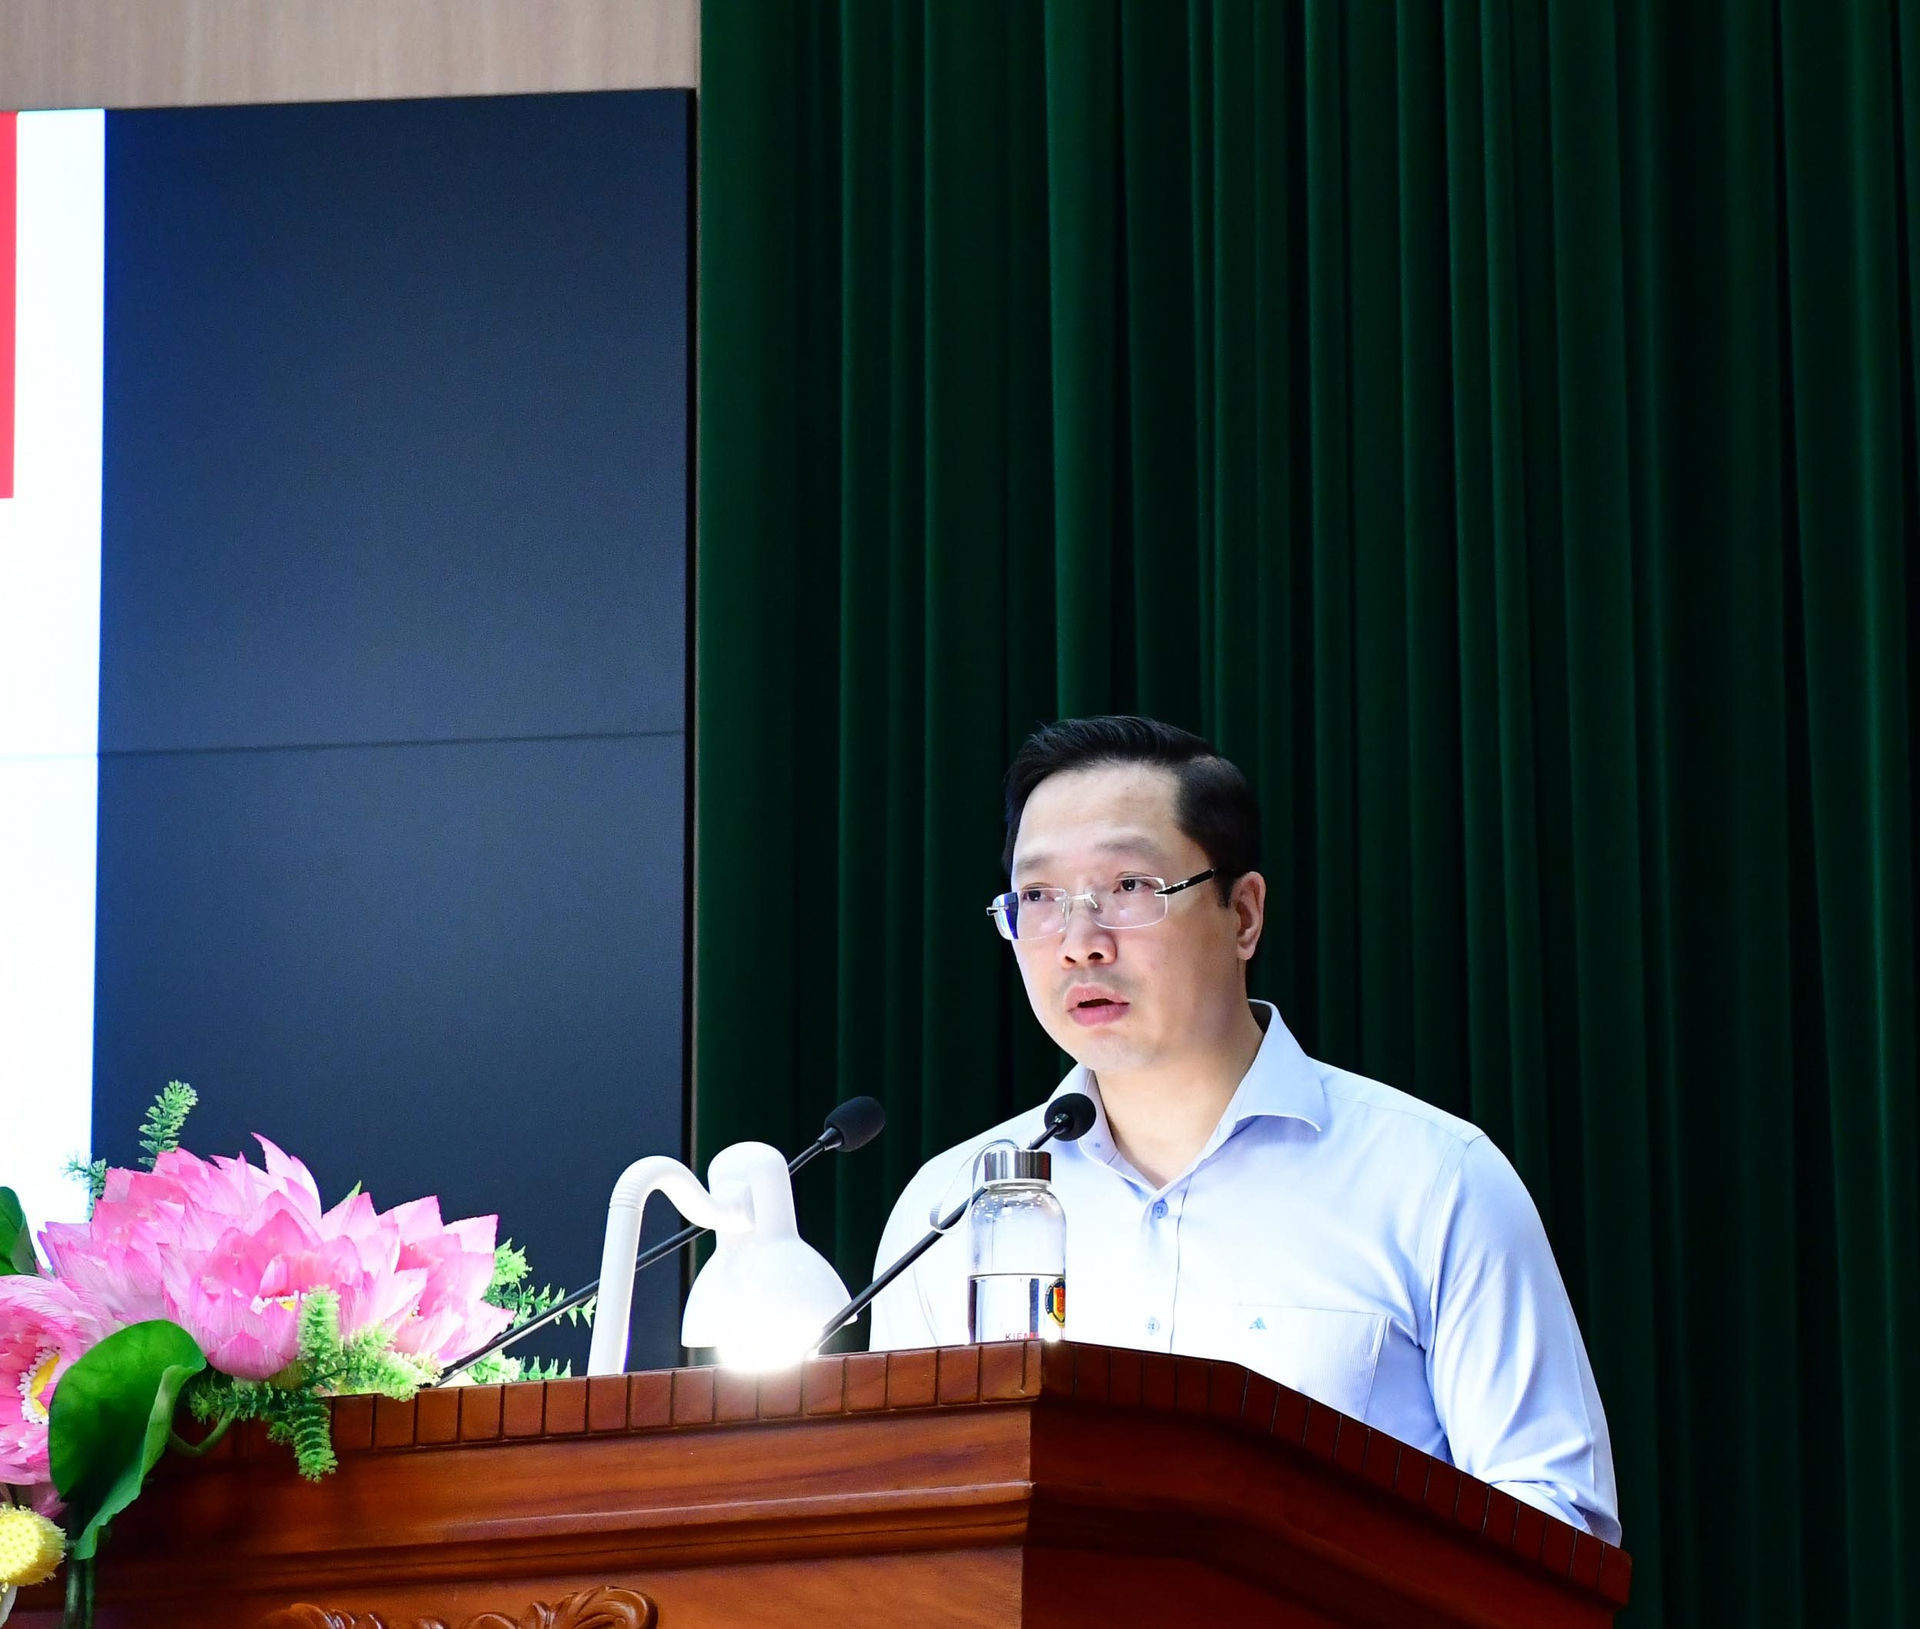 Báo cáo viên Ngô Việt Hồng - Ủy ban Pháp luật của Quốc hội trao đổi tại Hội nghị